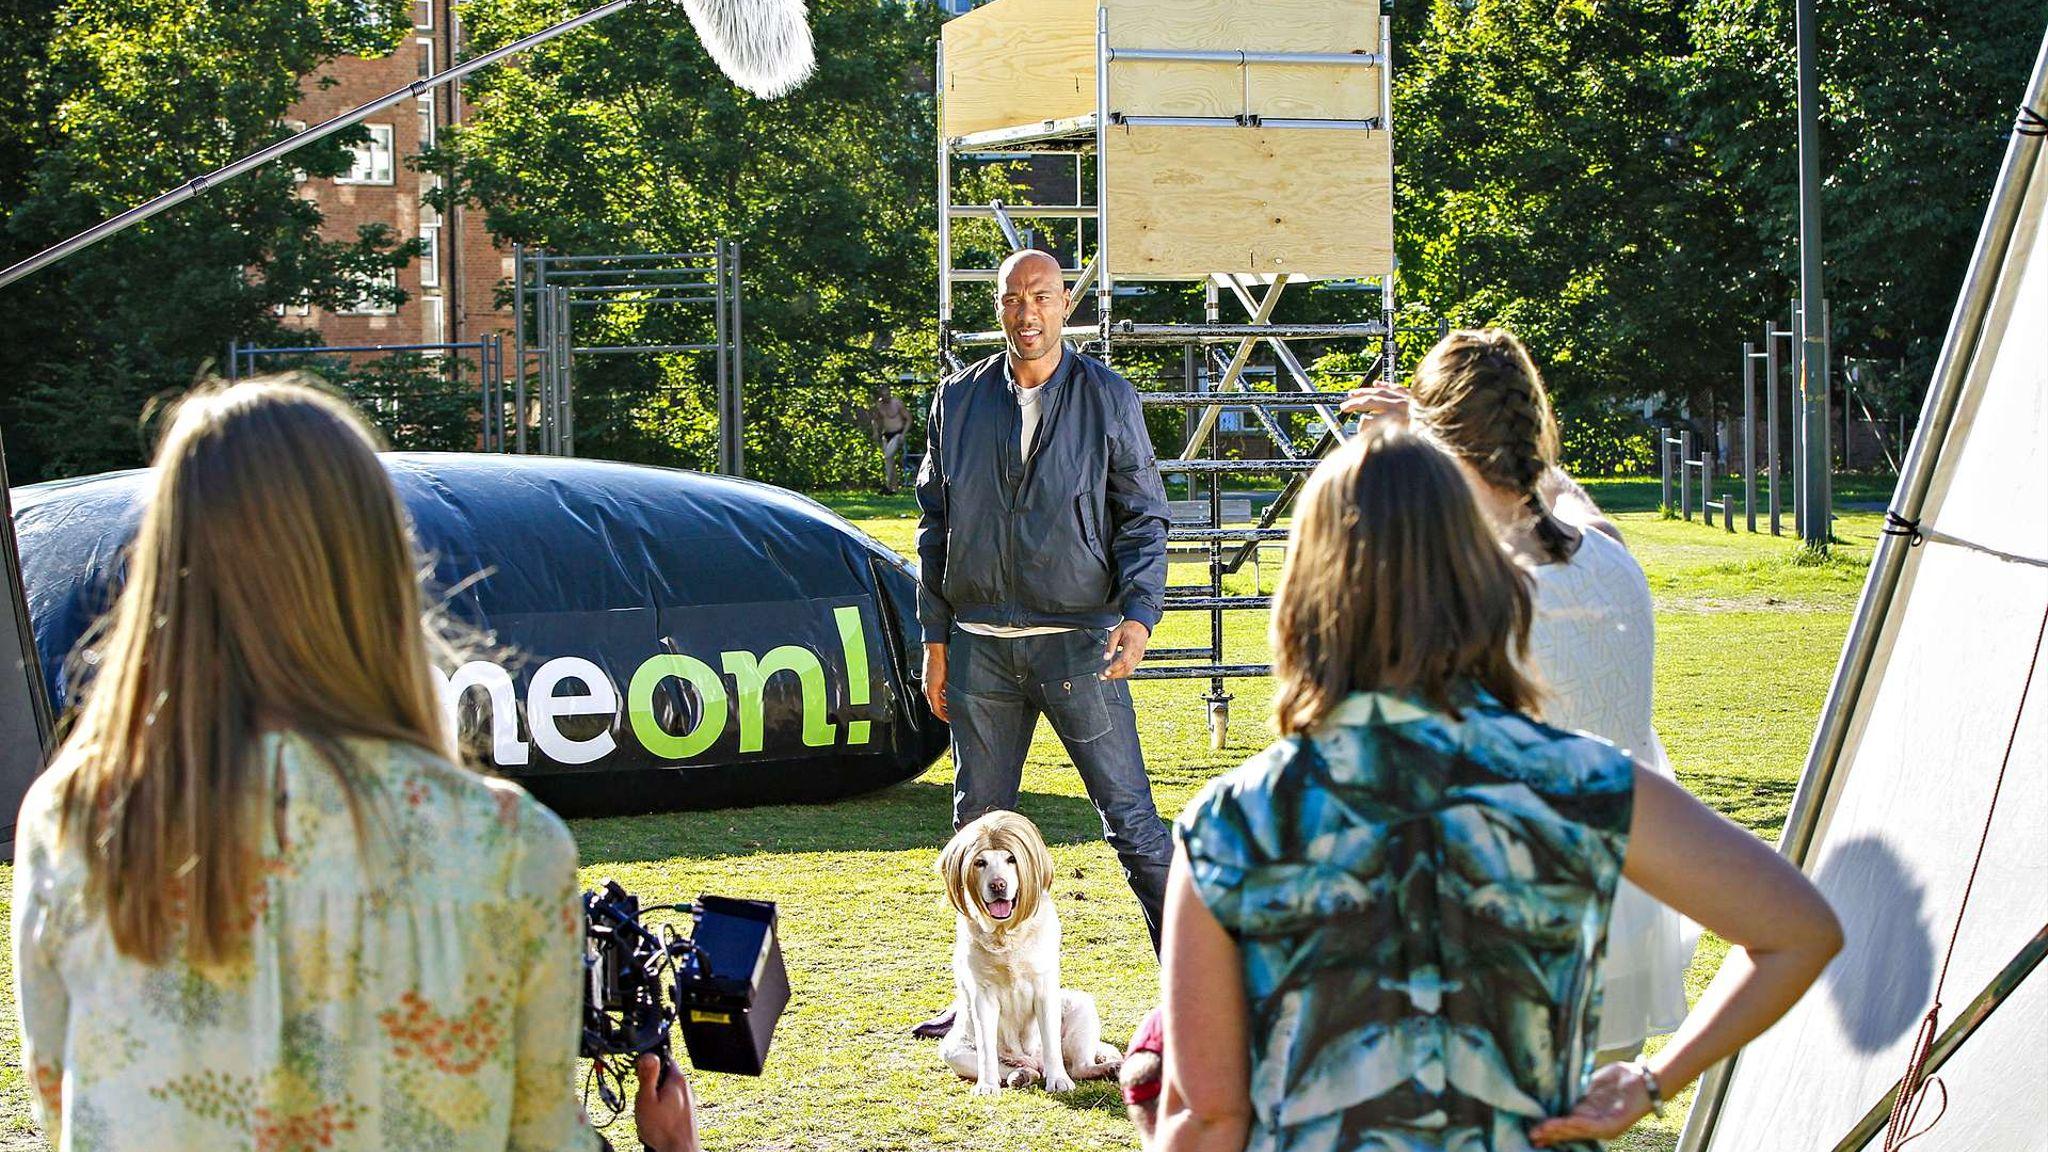 AMBASSADØR: John Carew er ambassadør for spillselskapet ComeOn. Her fra en reklamefilm-innspilling i 2016 i Oslo.